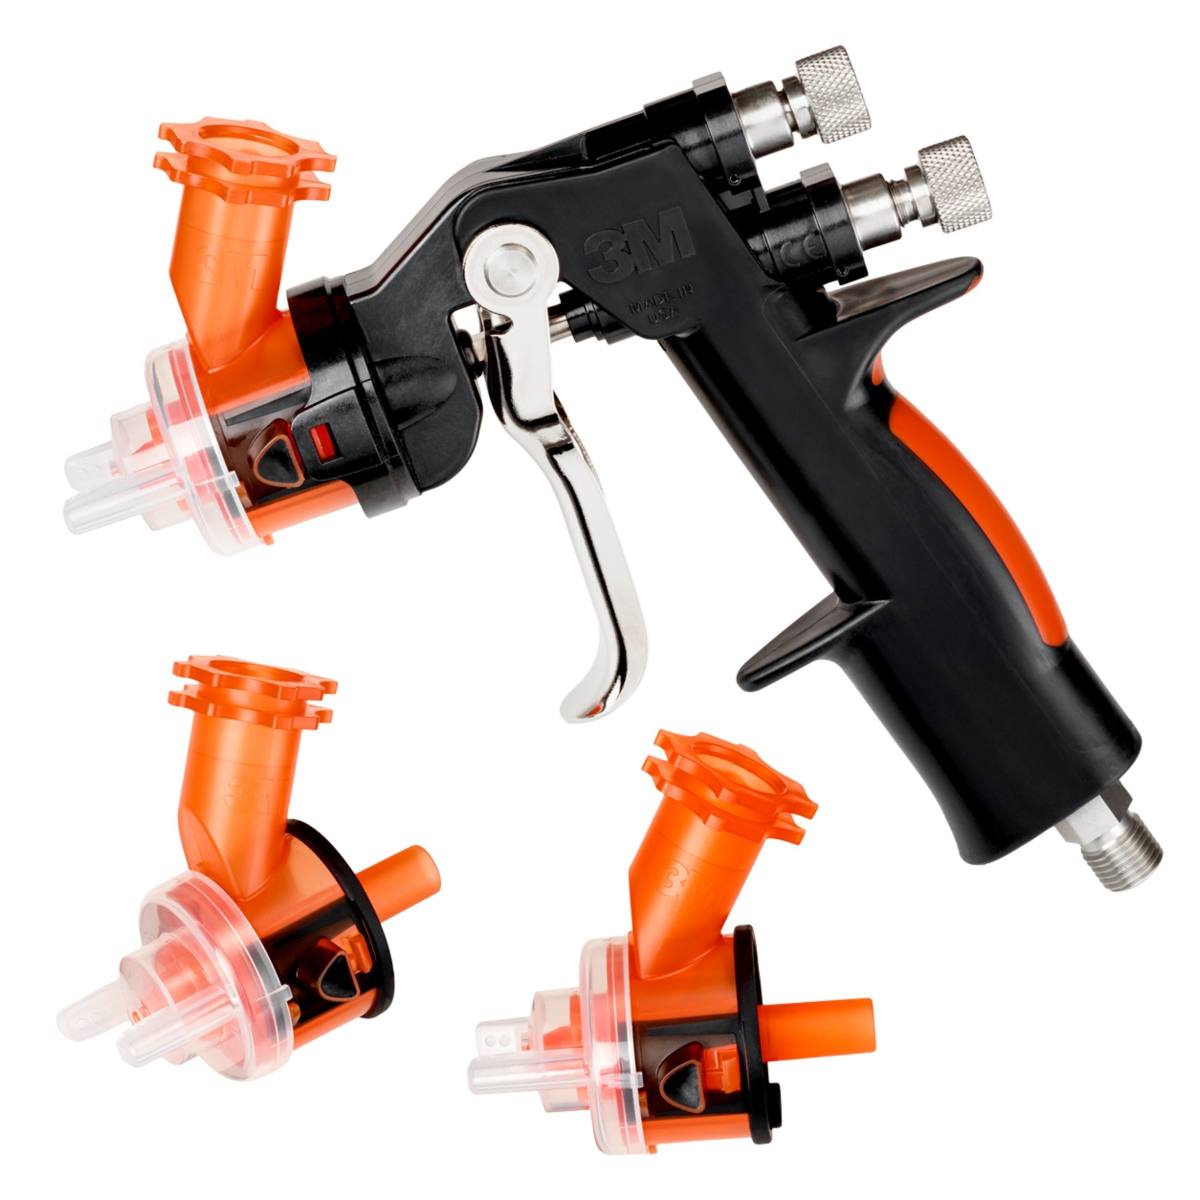 3M Accuspray pistola HG14, contenido del embalaje: 1x pistola, 3x cabezas de boquilla 1,4mm naranja 16612, 1x manómetro #16577